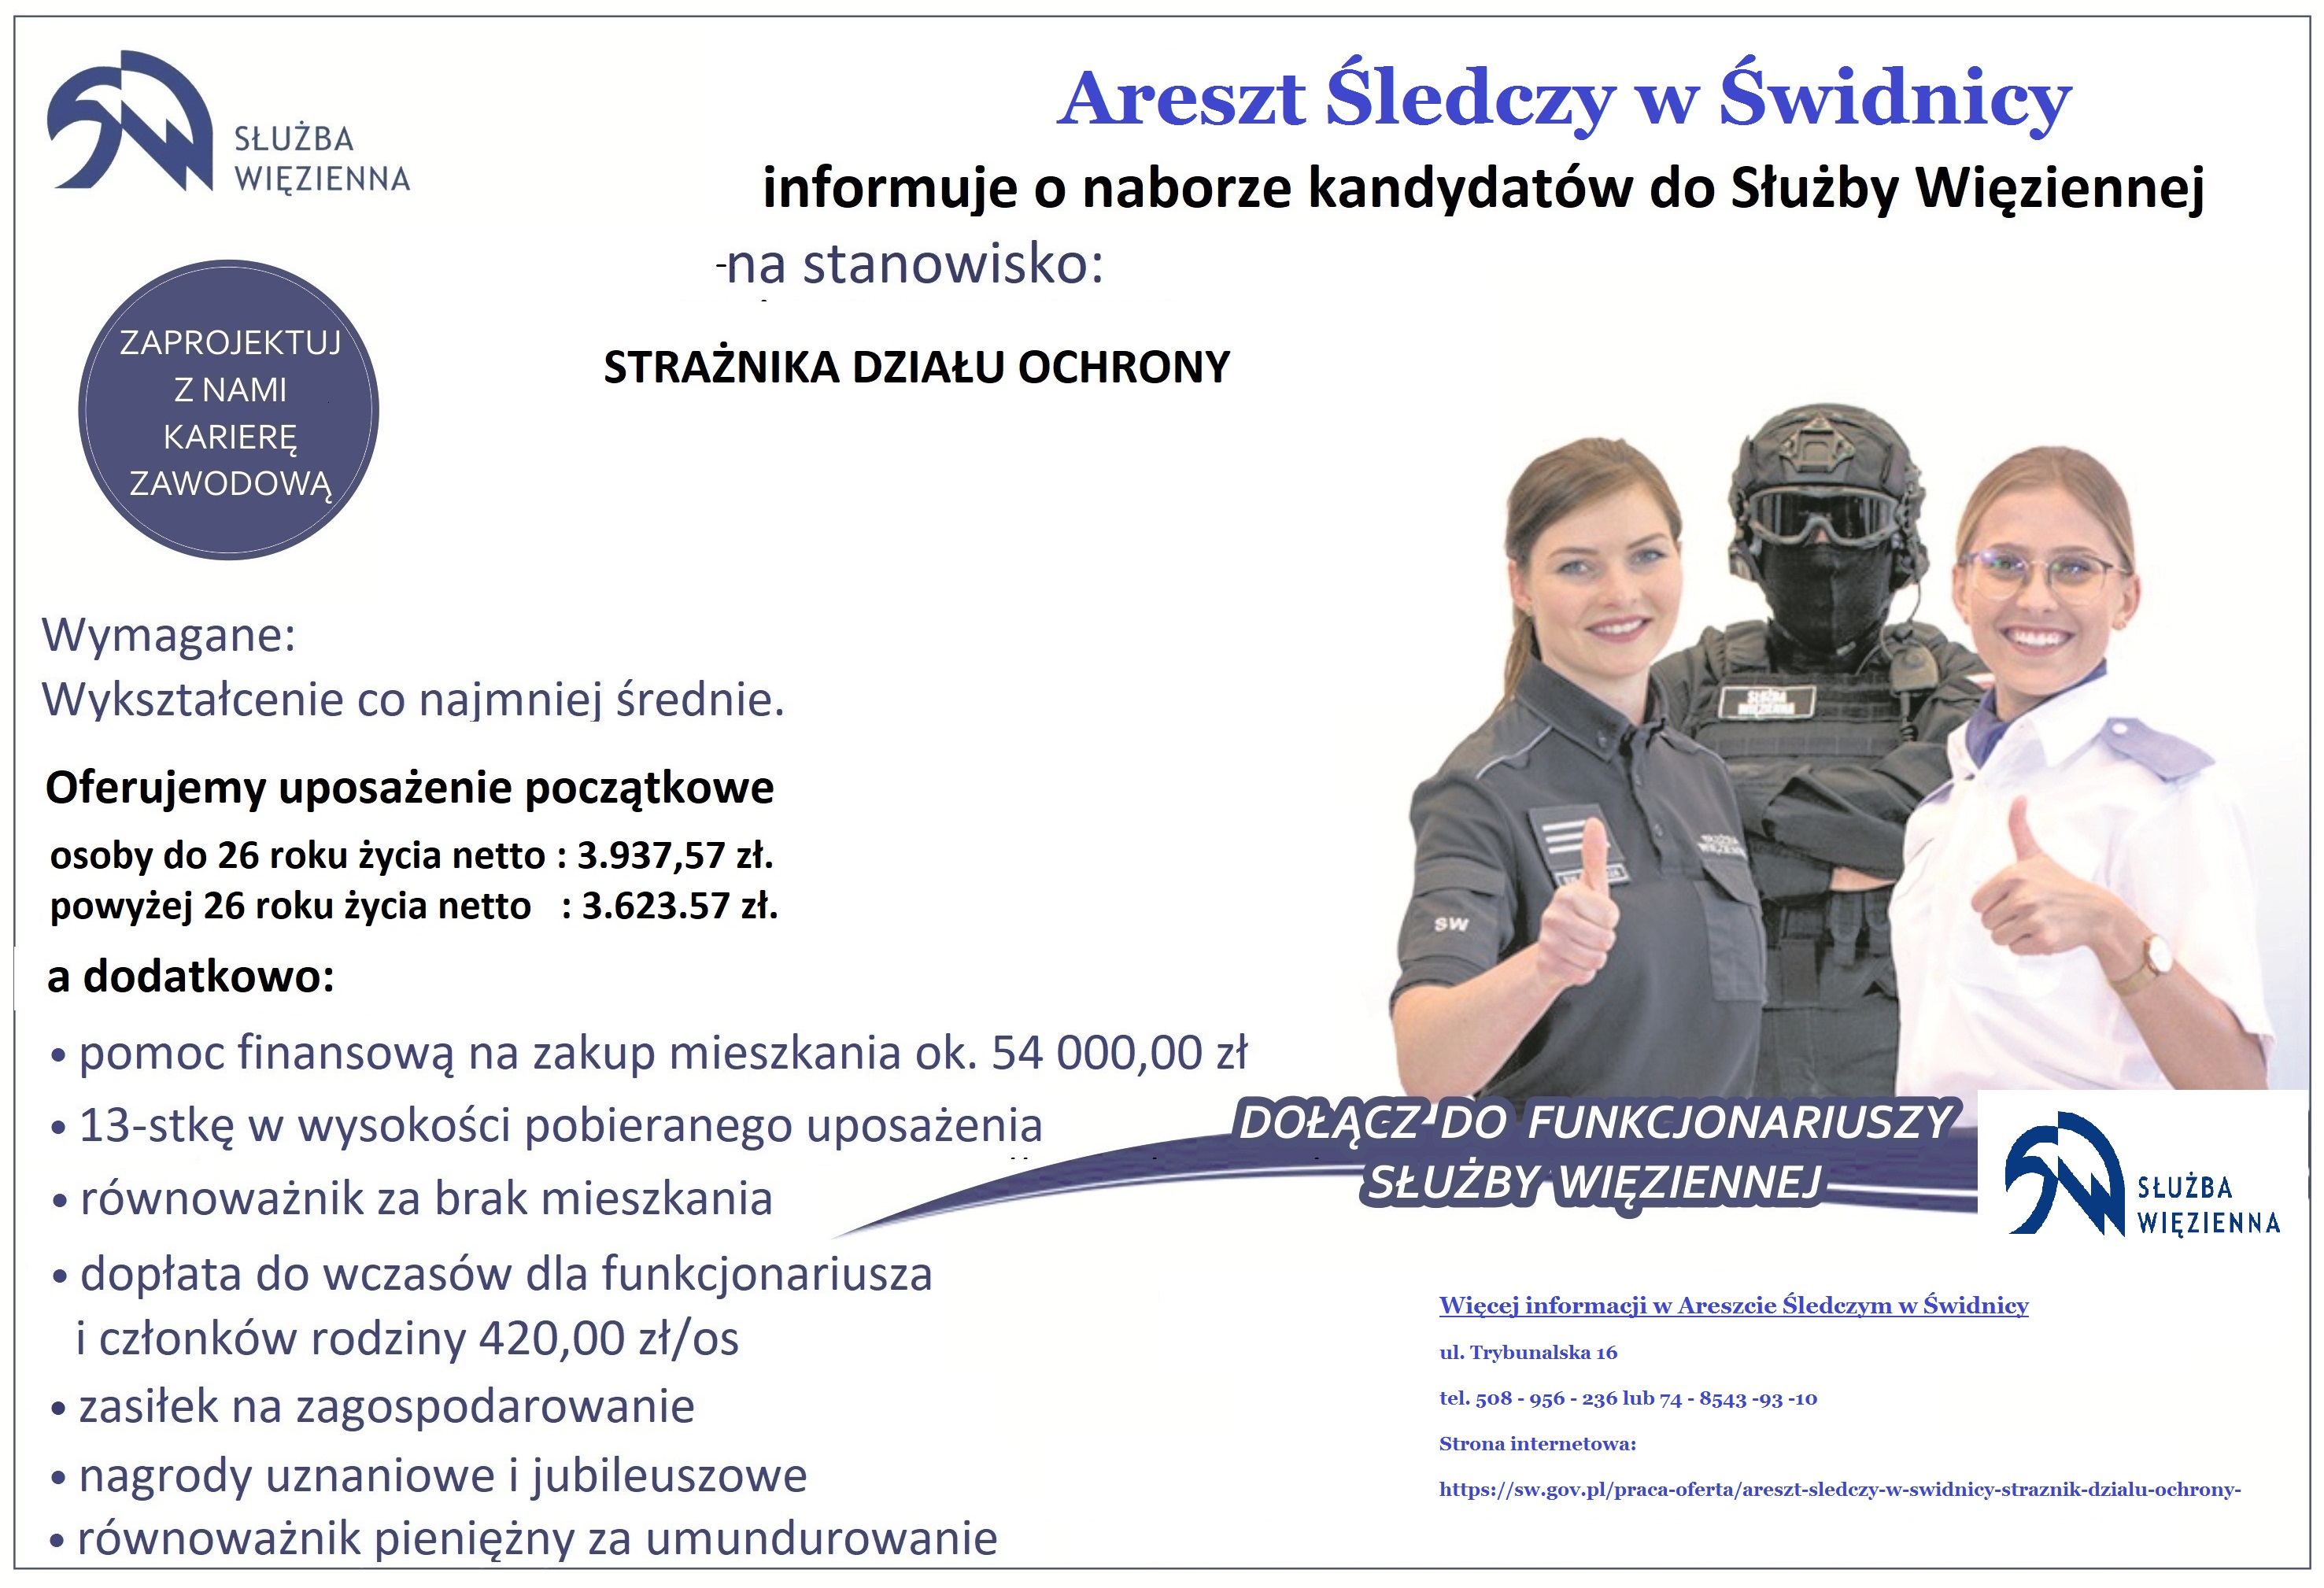 Areszt Śledczy w Świdnicy informuje o naborze kandydatów do Służby Więziennej